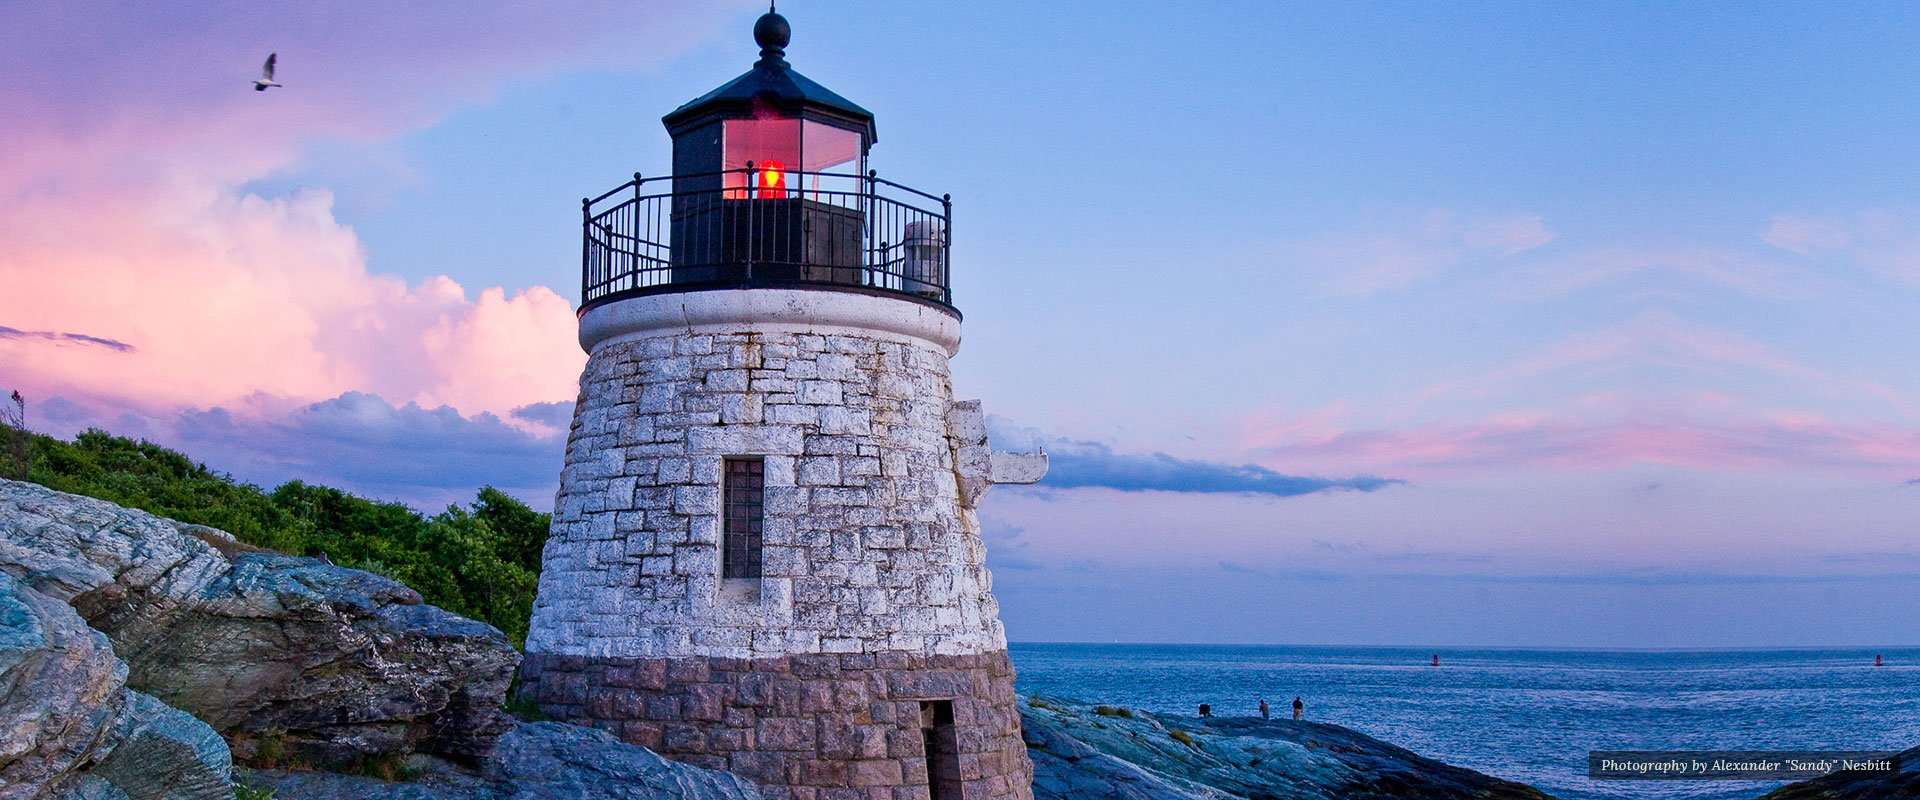 The Lighthouse | Newport Inns of Rhode Island